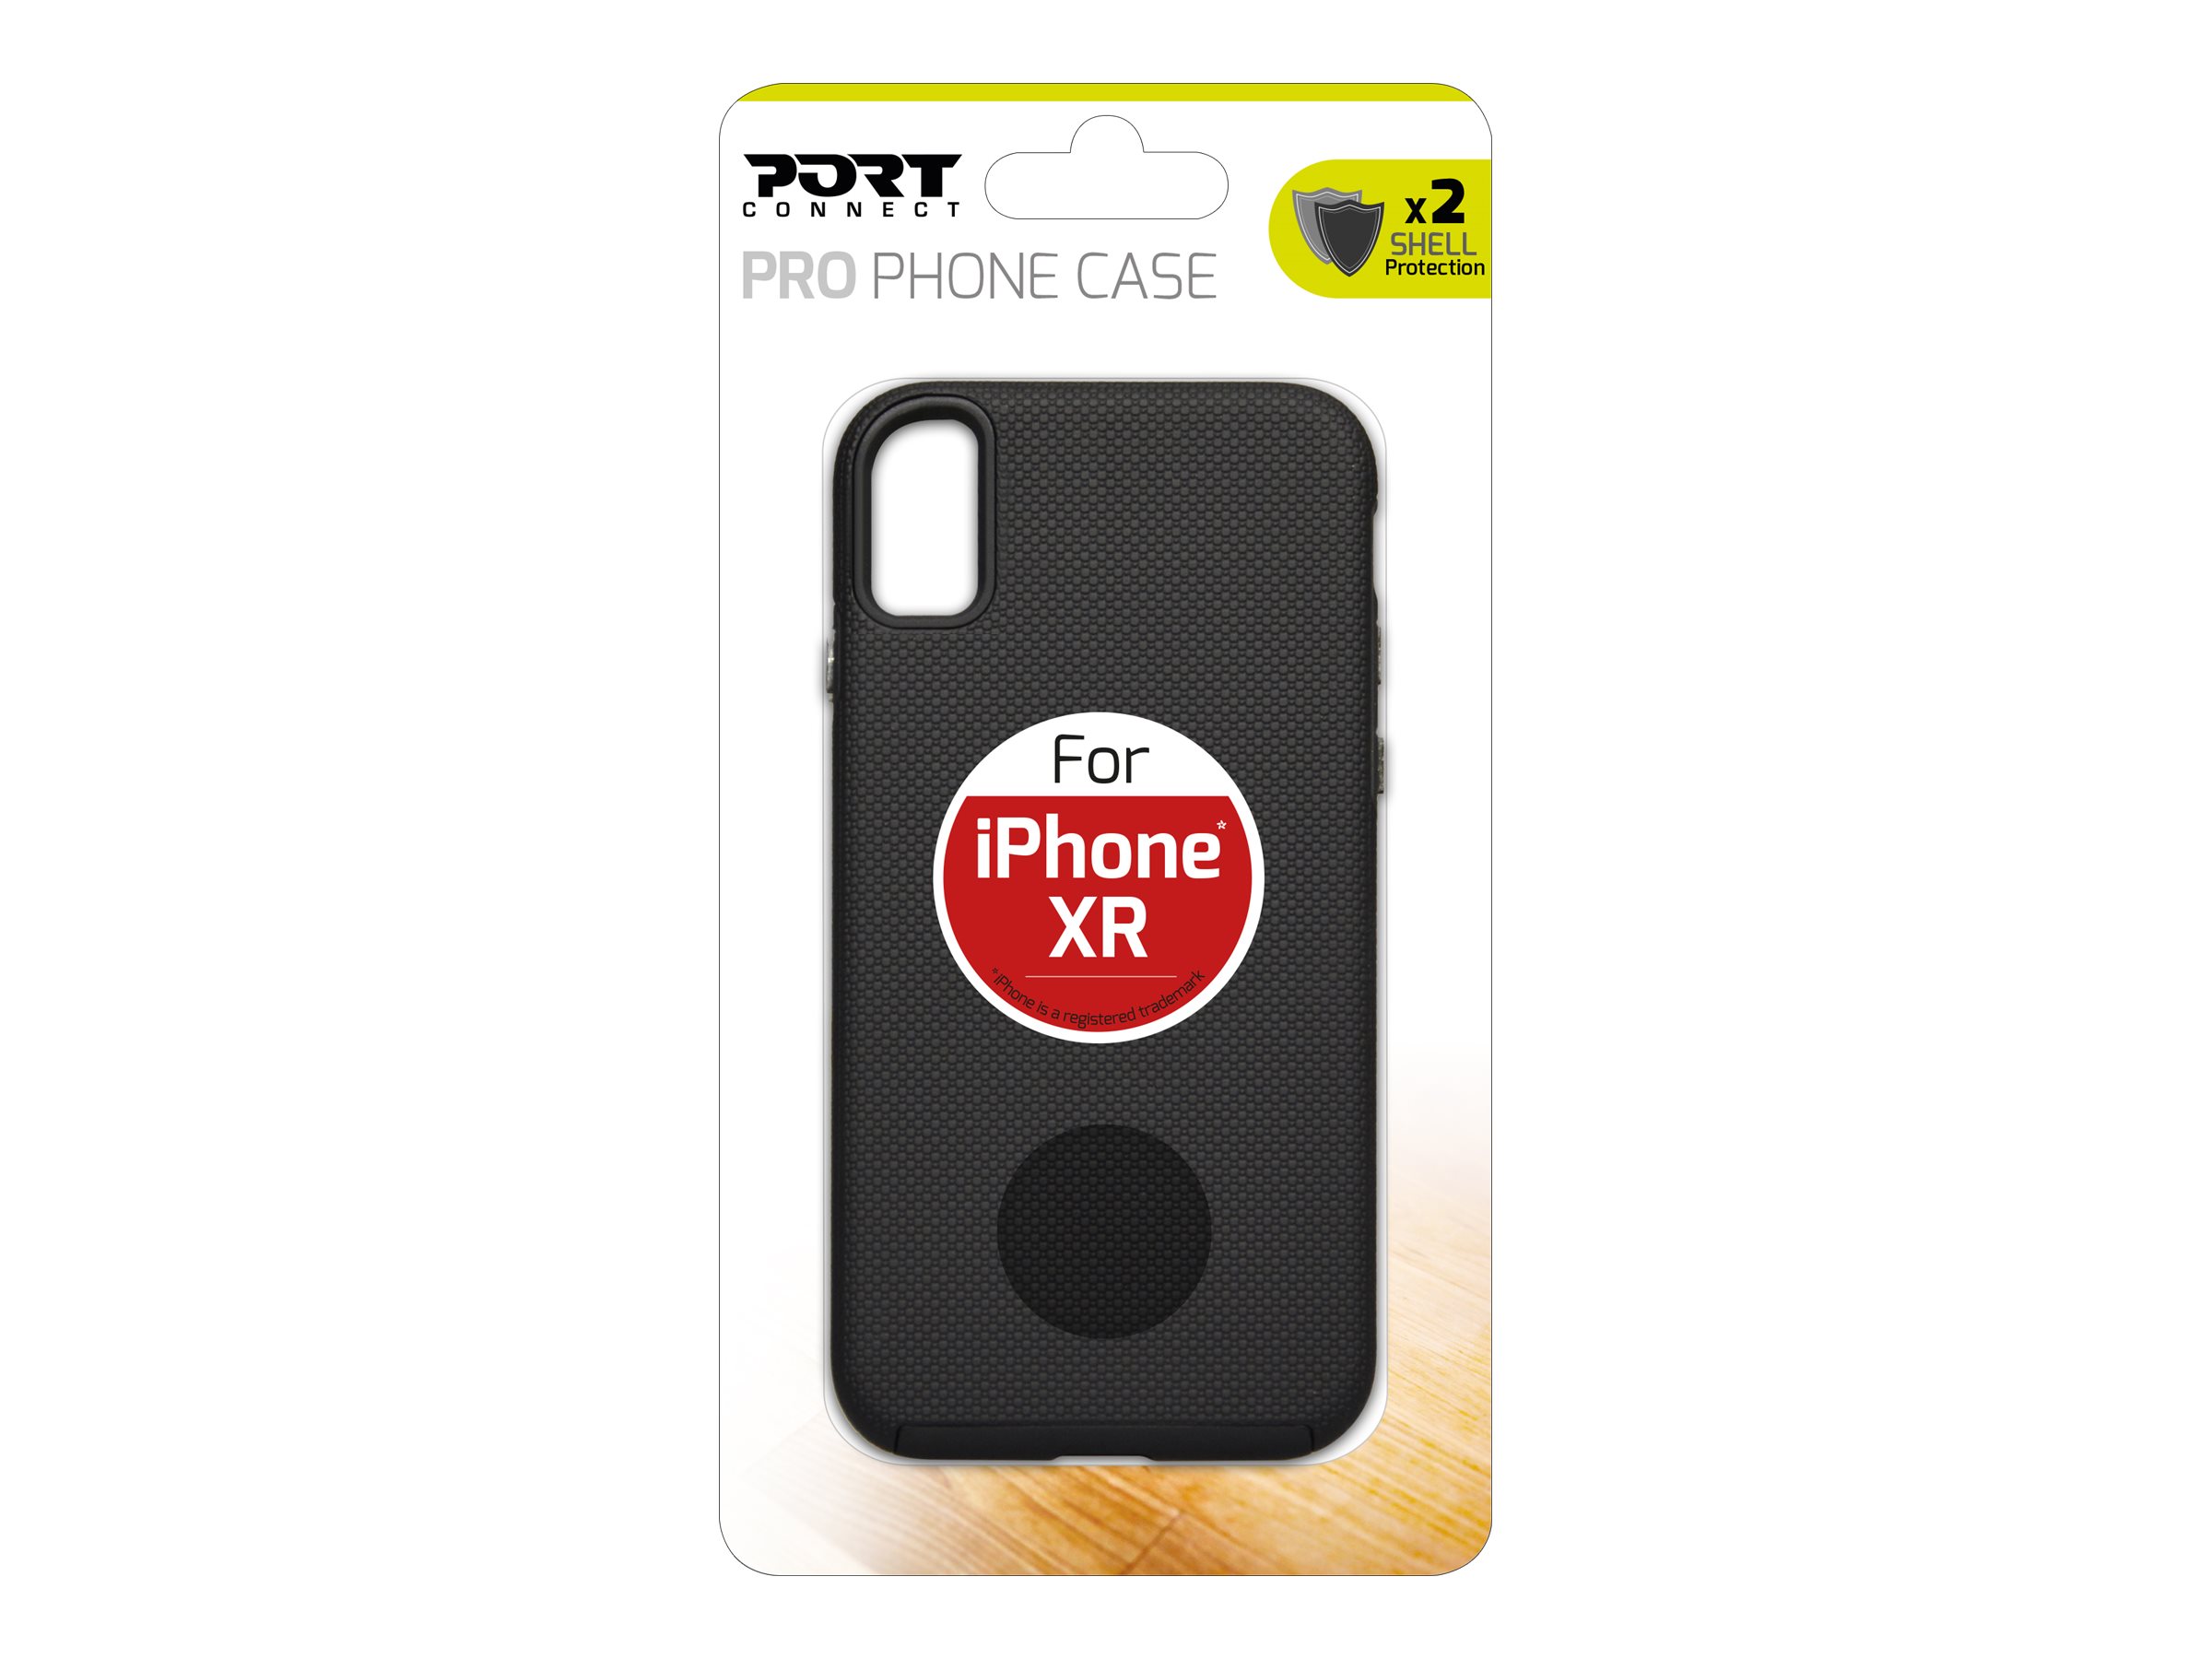 PORT Connect PRO phone case - Coque de protection pour téléphone portable - polycarbonate, polyuréthanne thermoplastique (TPU) - pour Apple iPhone XR - 901849 - Coques et étuis pour téléphone portable